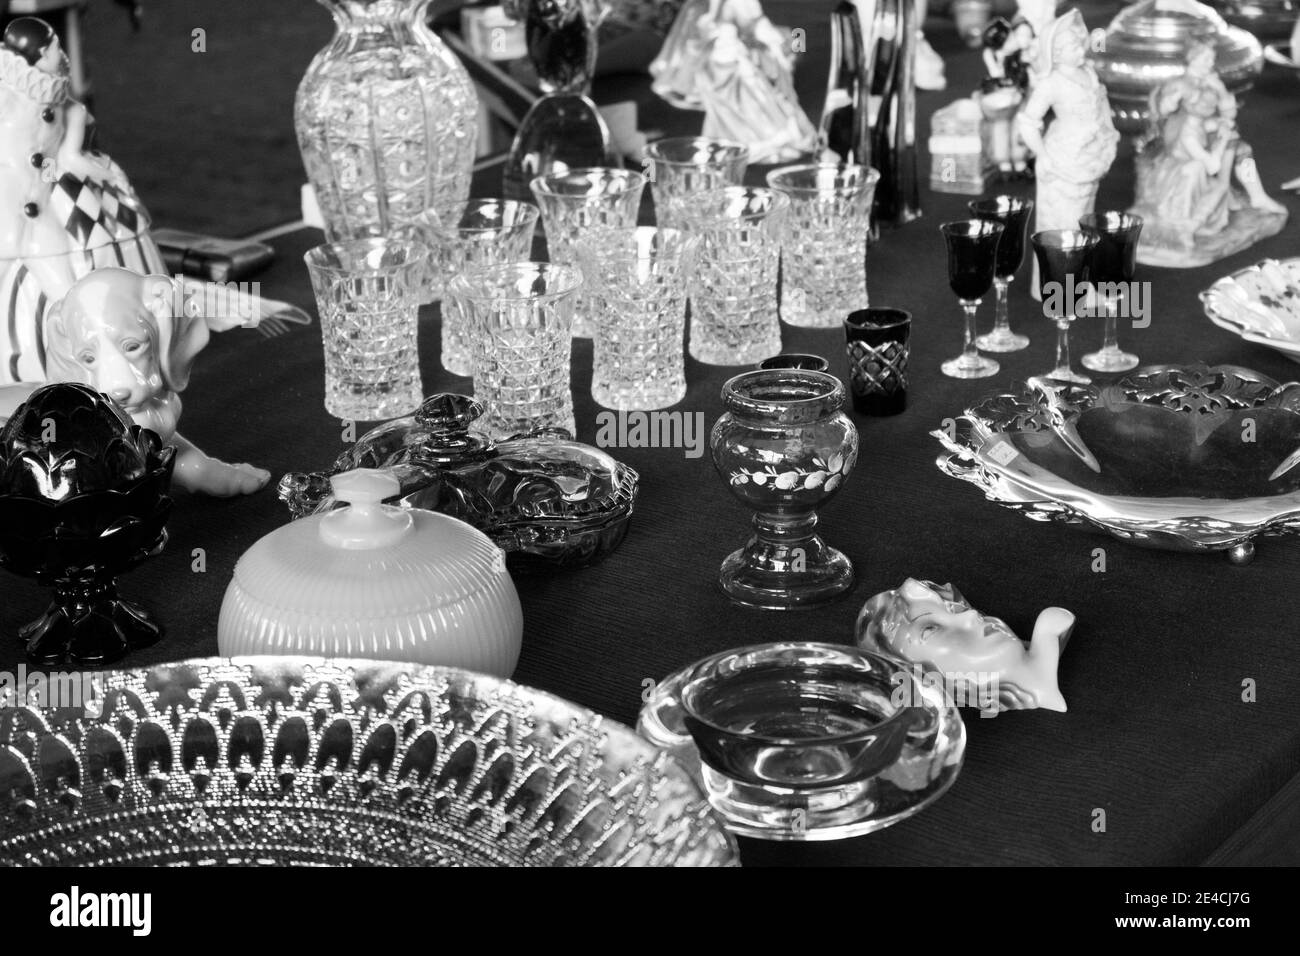 Coupes, verres, assiettes, porcelaine, poterie et autres objets en cristal exposés sur un marché aux puces [version noir et blanc] Banque D'Images